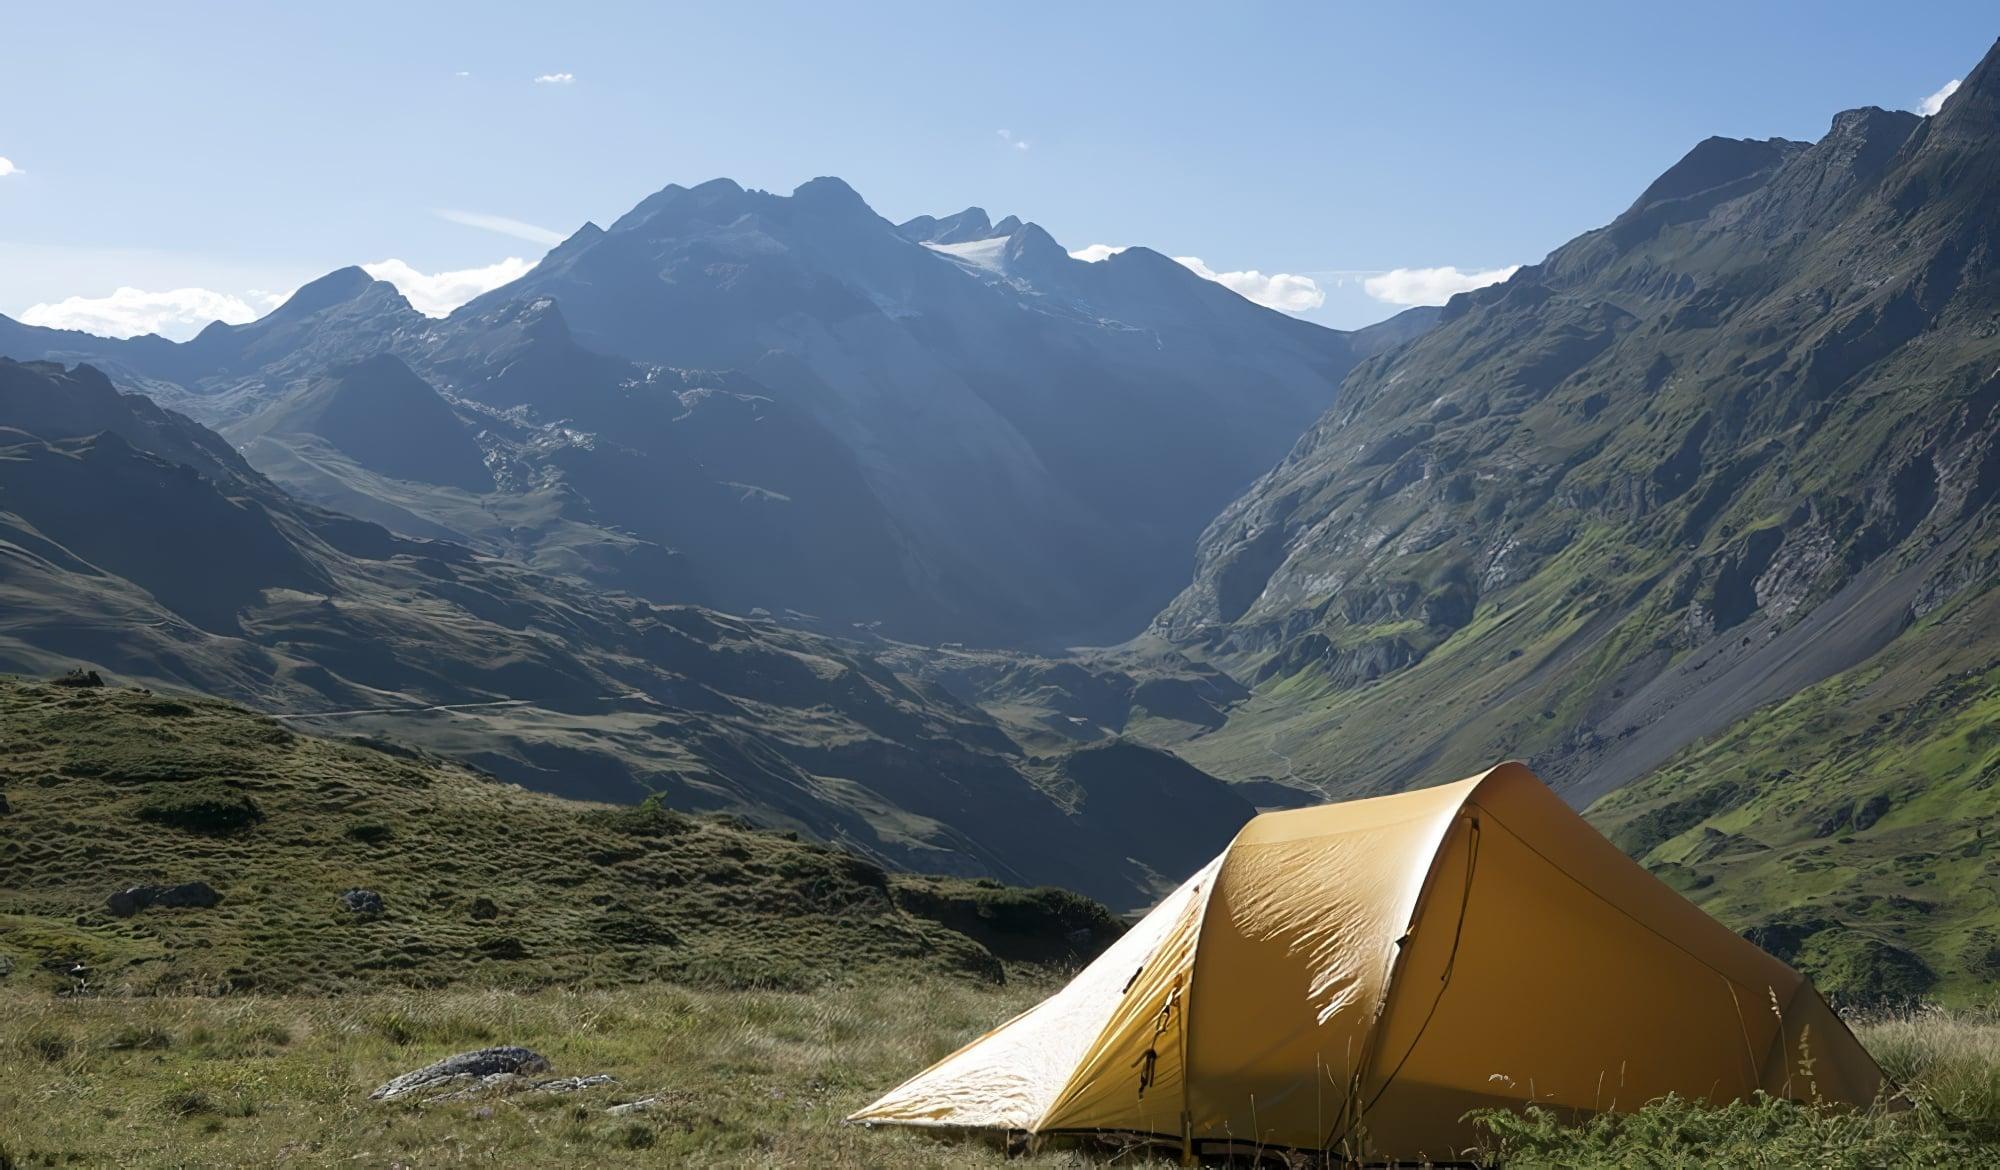  Combien de campings nature sont disponibles en France en 2018?